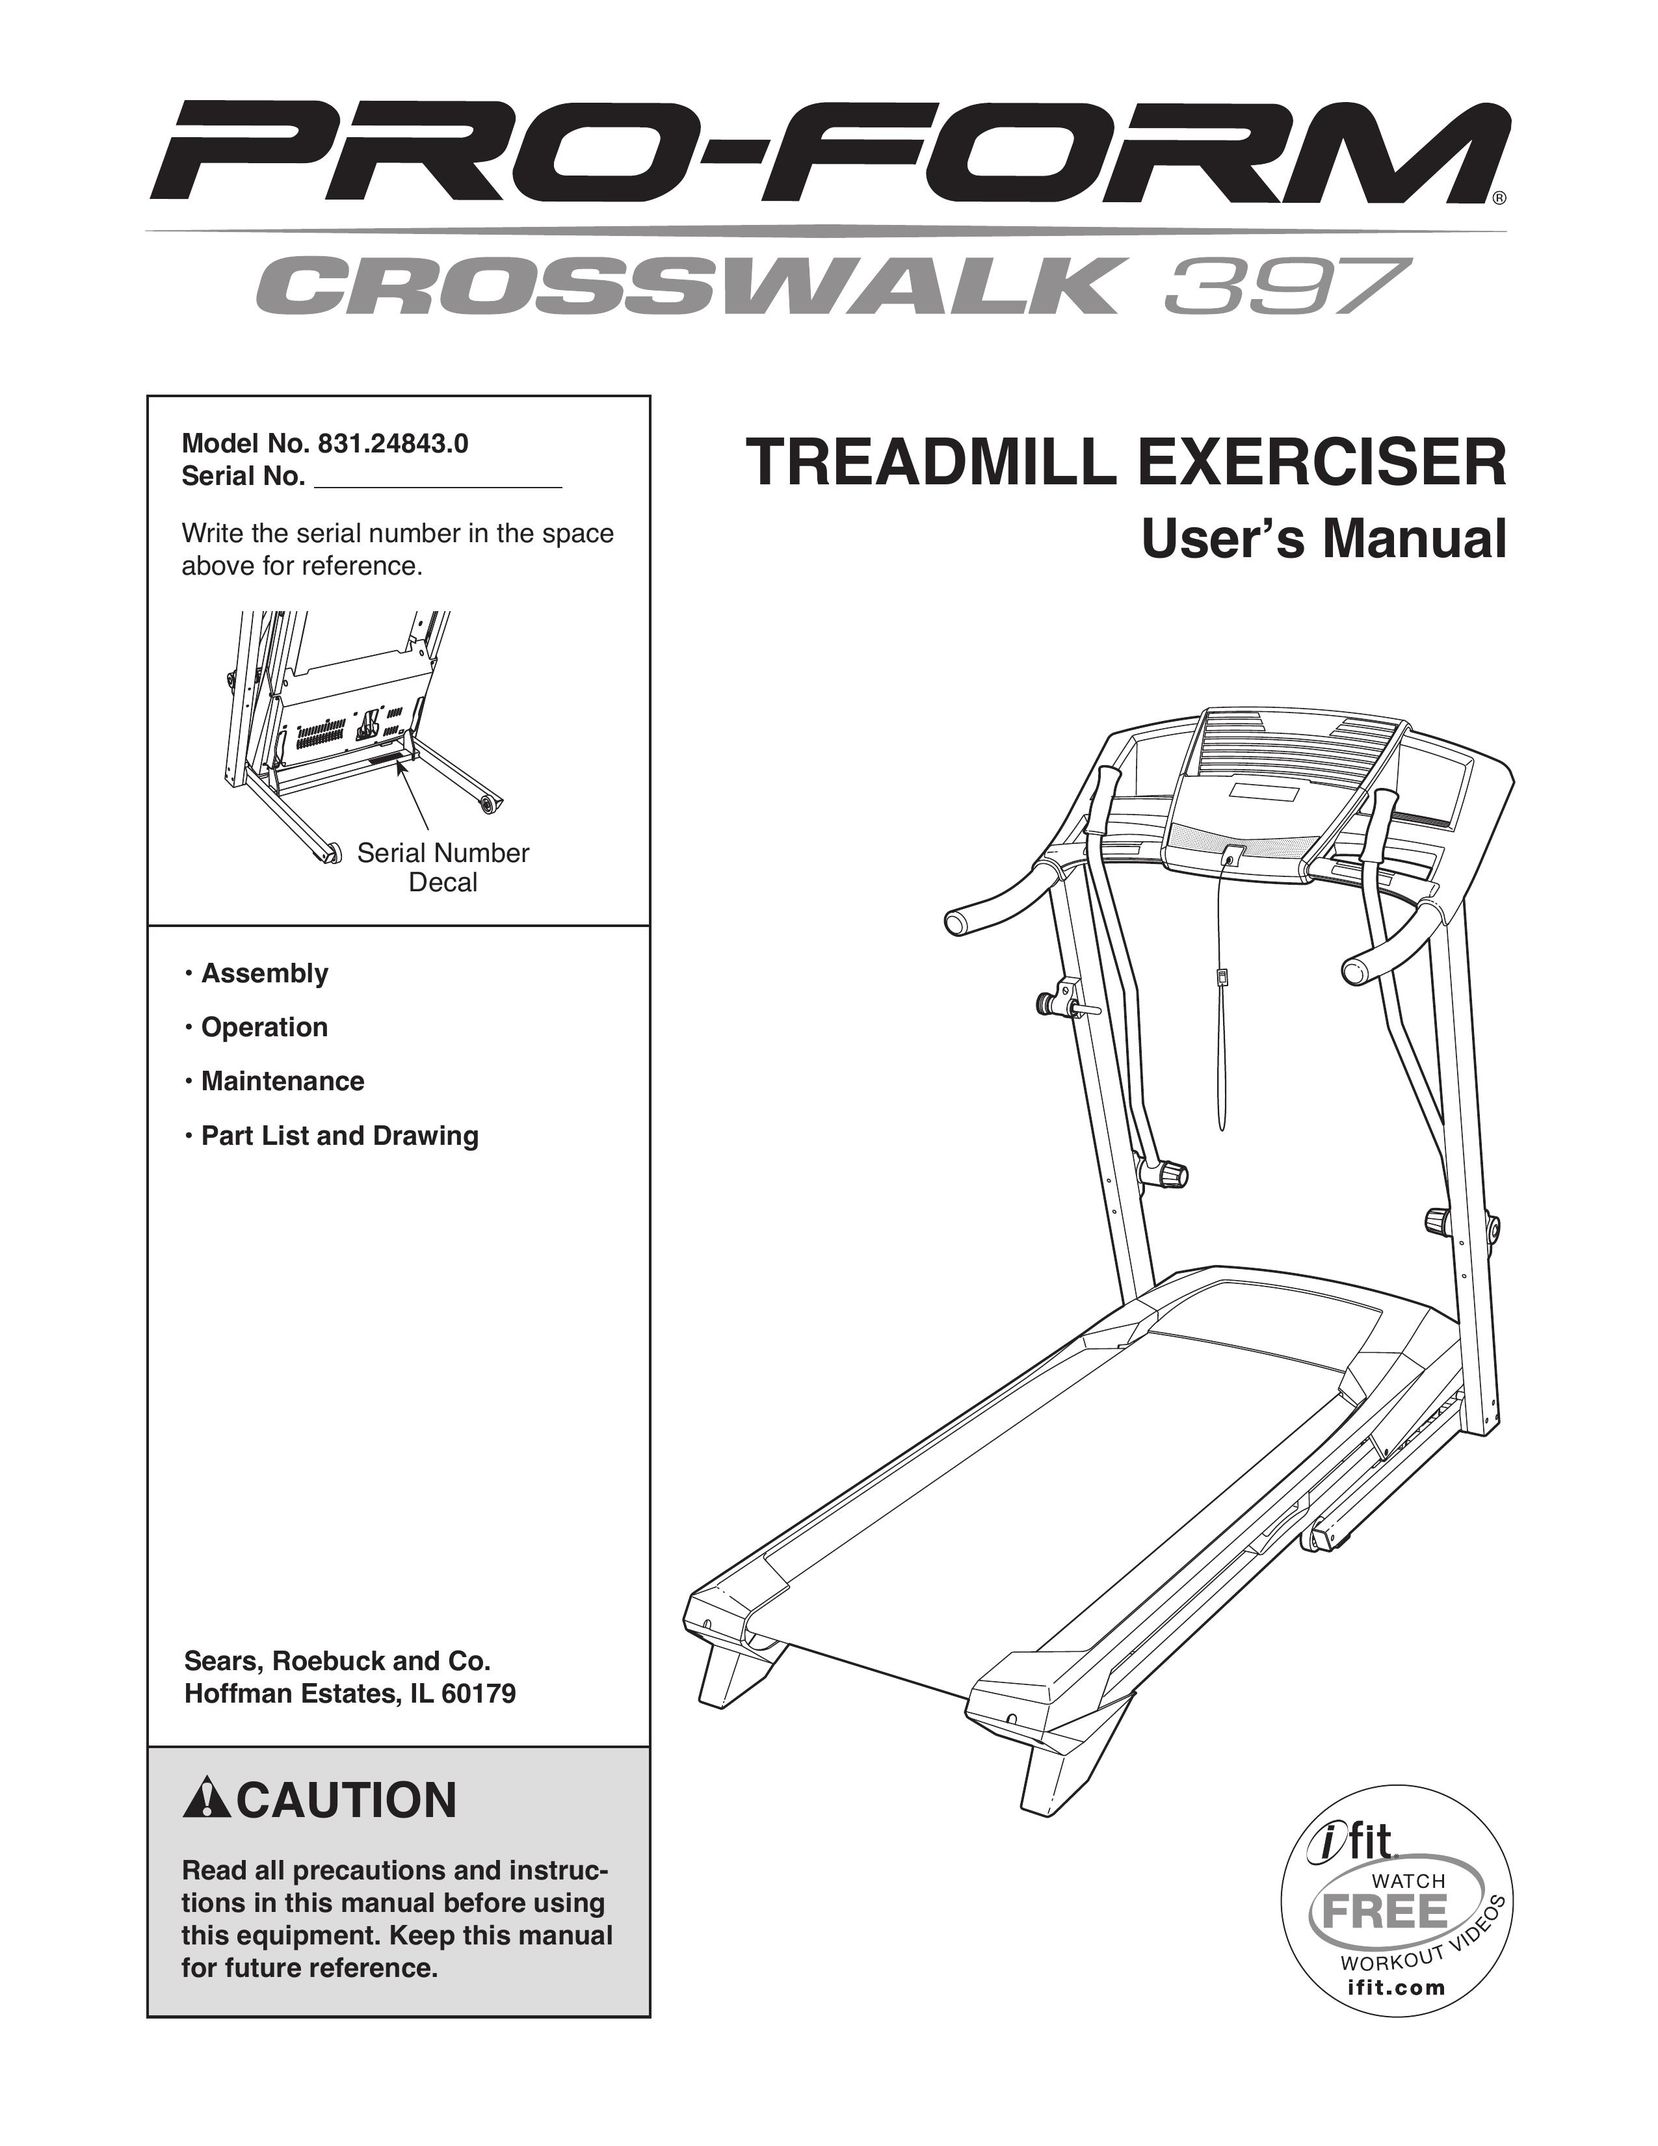 ProForm 397 Treadmill User Manual